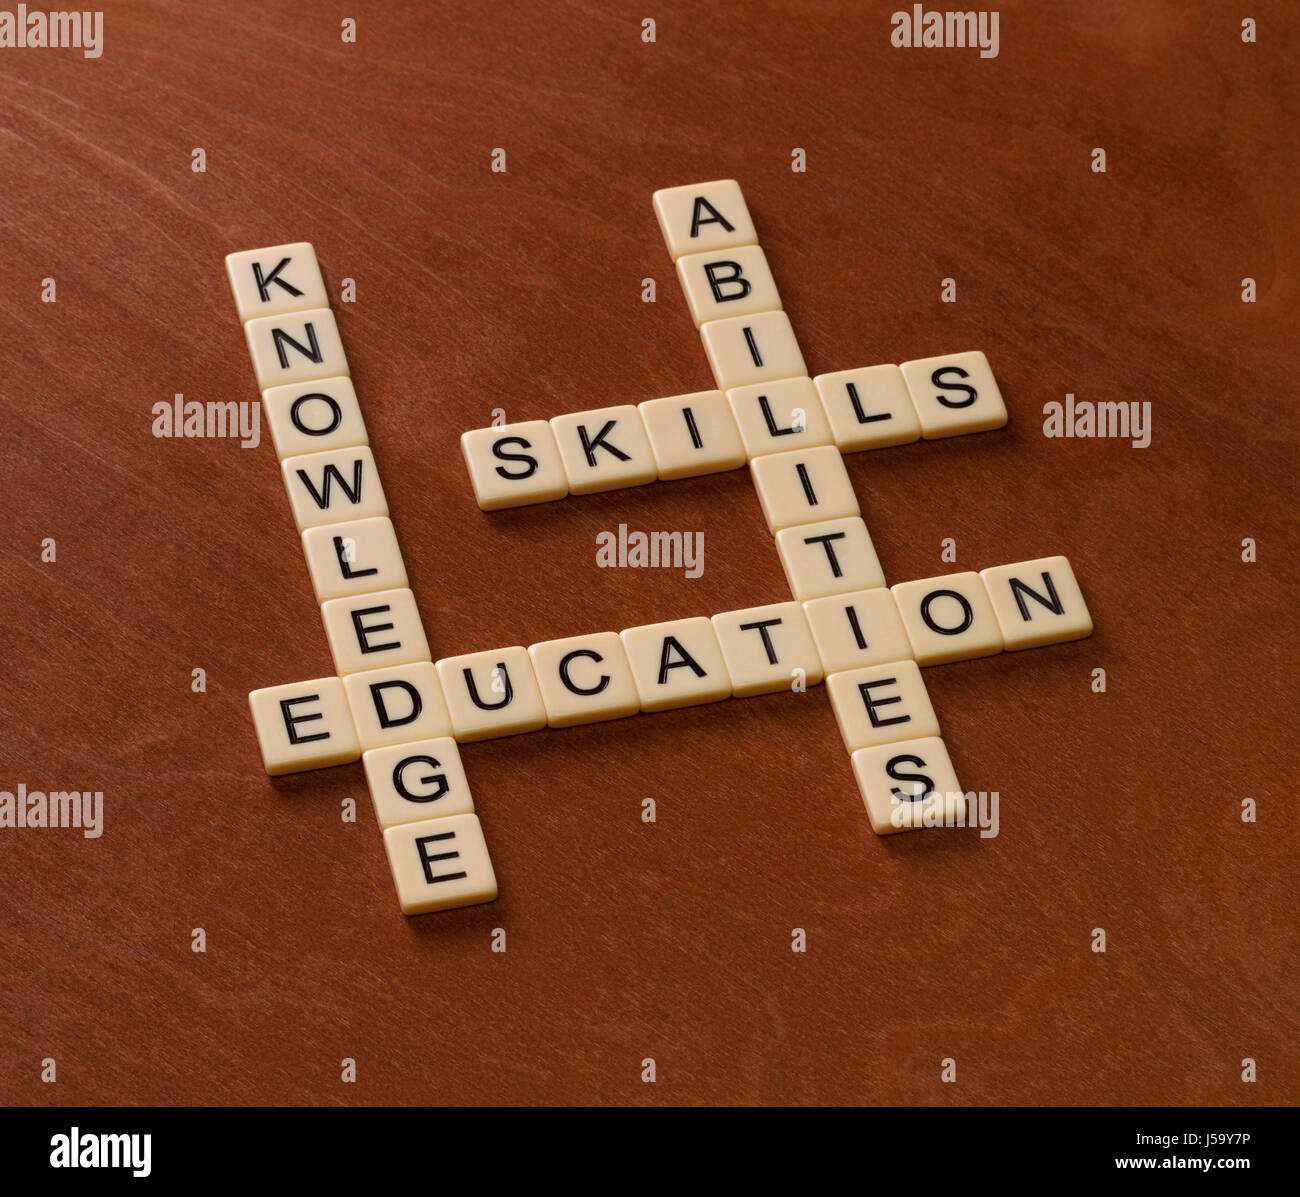 Kreuzworträtsel mit Worten Fertigkeiten, Fähigkeiten, wissen und Bildung. Learning-Konzepts. Elfenbein Fliesen mit Großbuchstaben auf Mahagoni Brett. Stockfoto